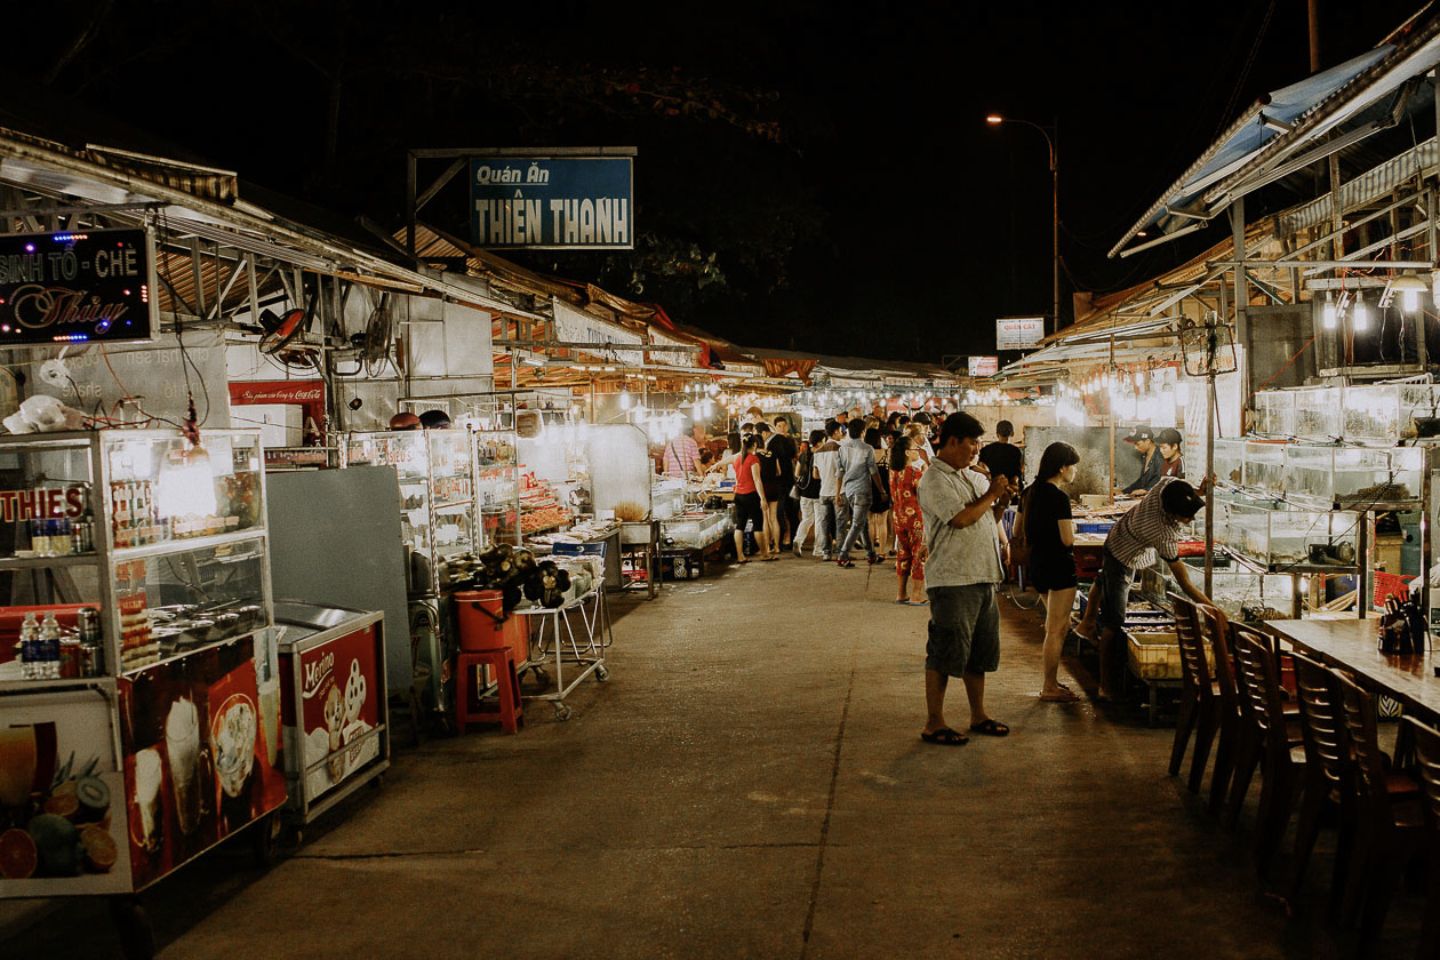 Chợ đêm Phú Quốc (chợ đêm Bạch Đằng) – Thế giới ẩm thực nhộn nhịp khi đêm về 17